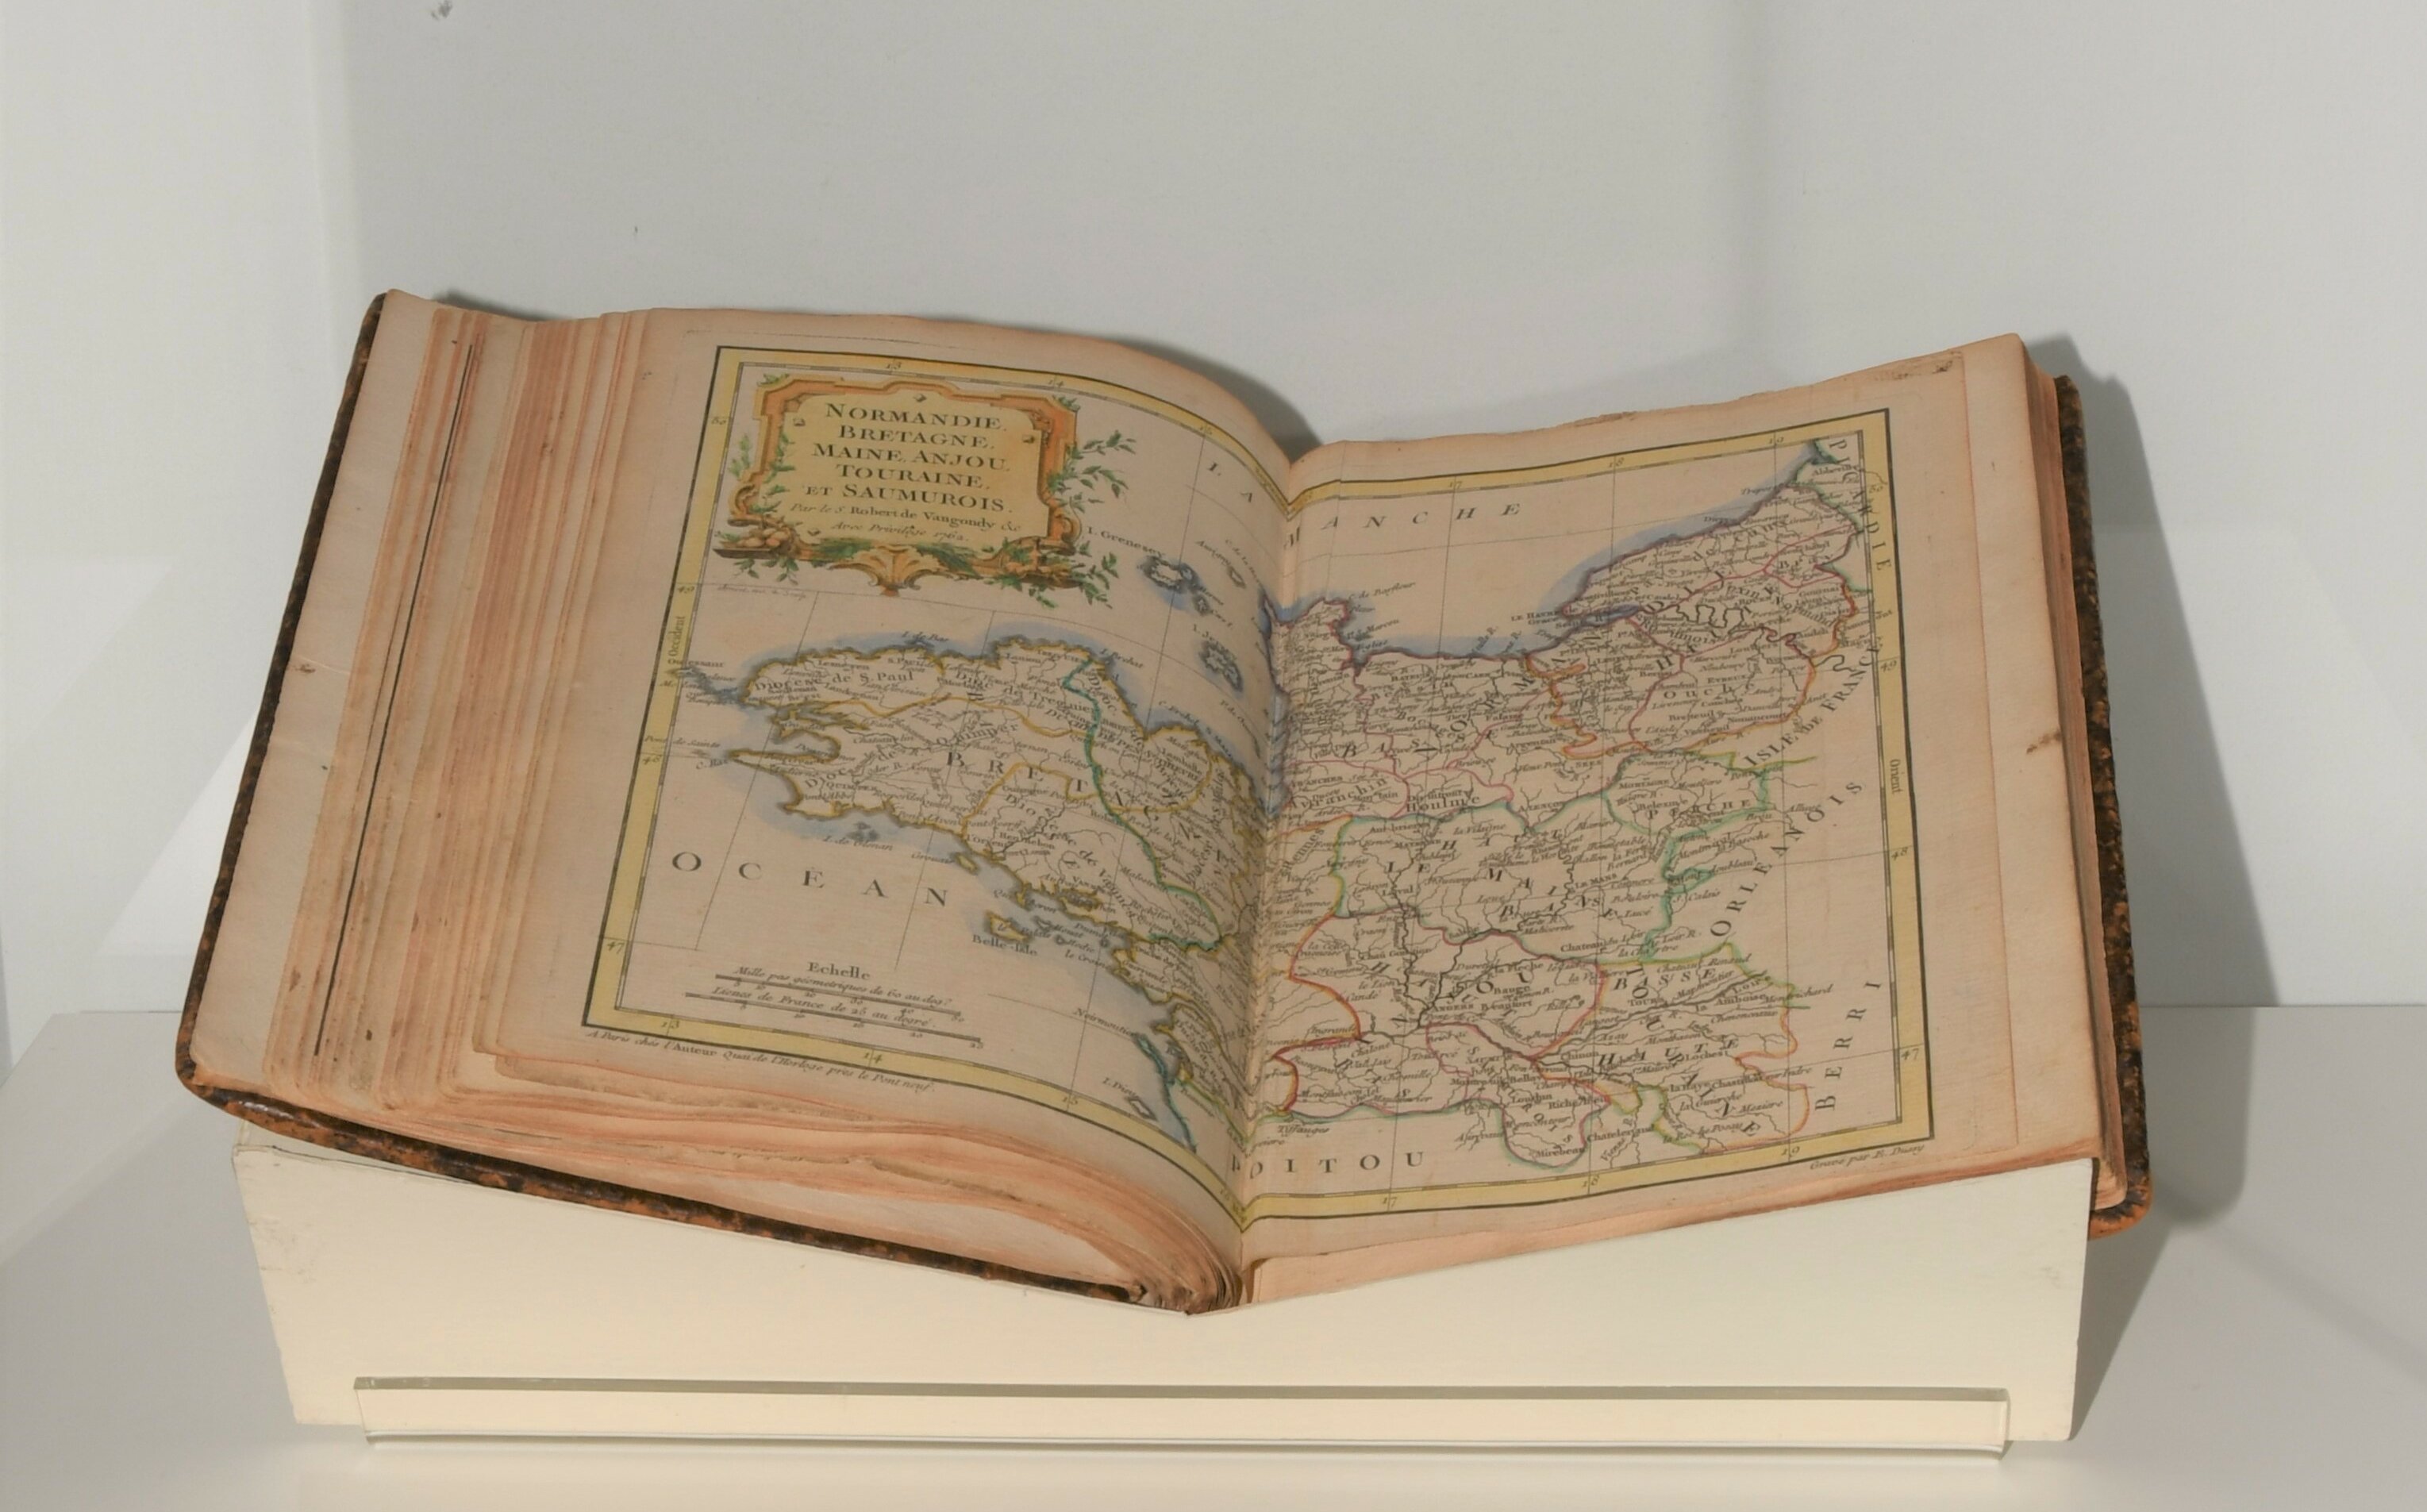 Zu sehen ist aufgeschlagenes Buch mit einer historischen Karte. 